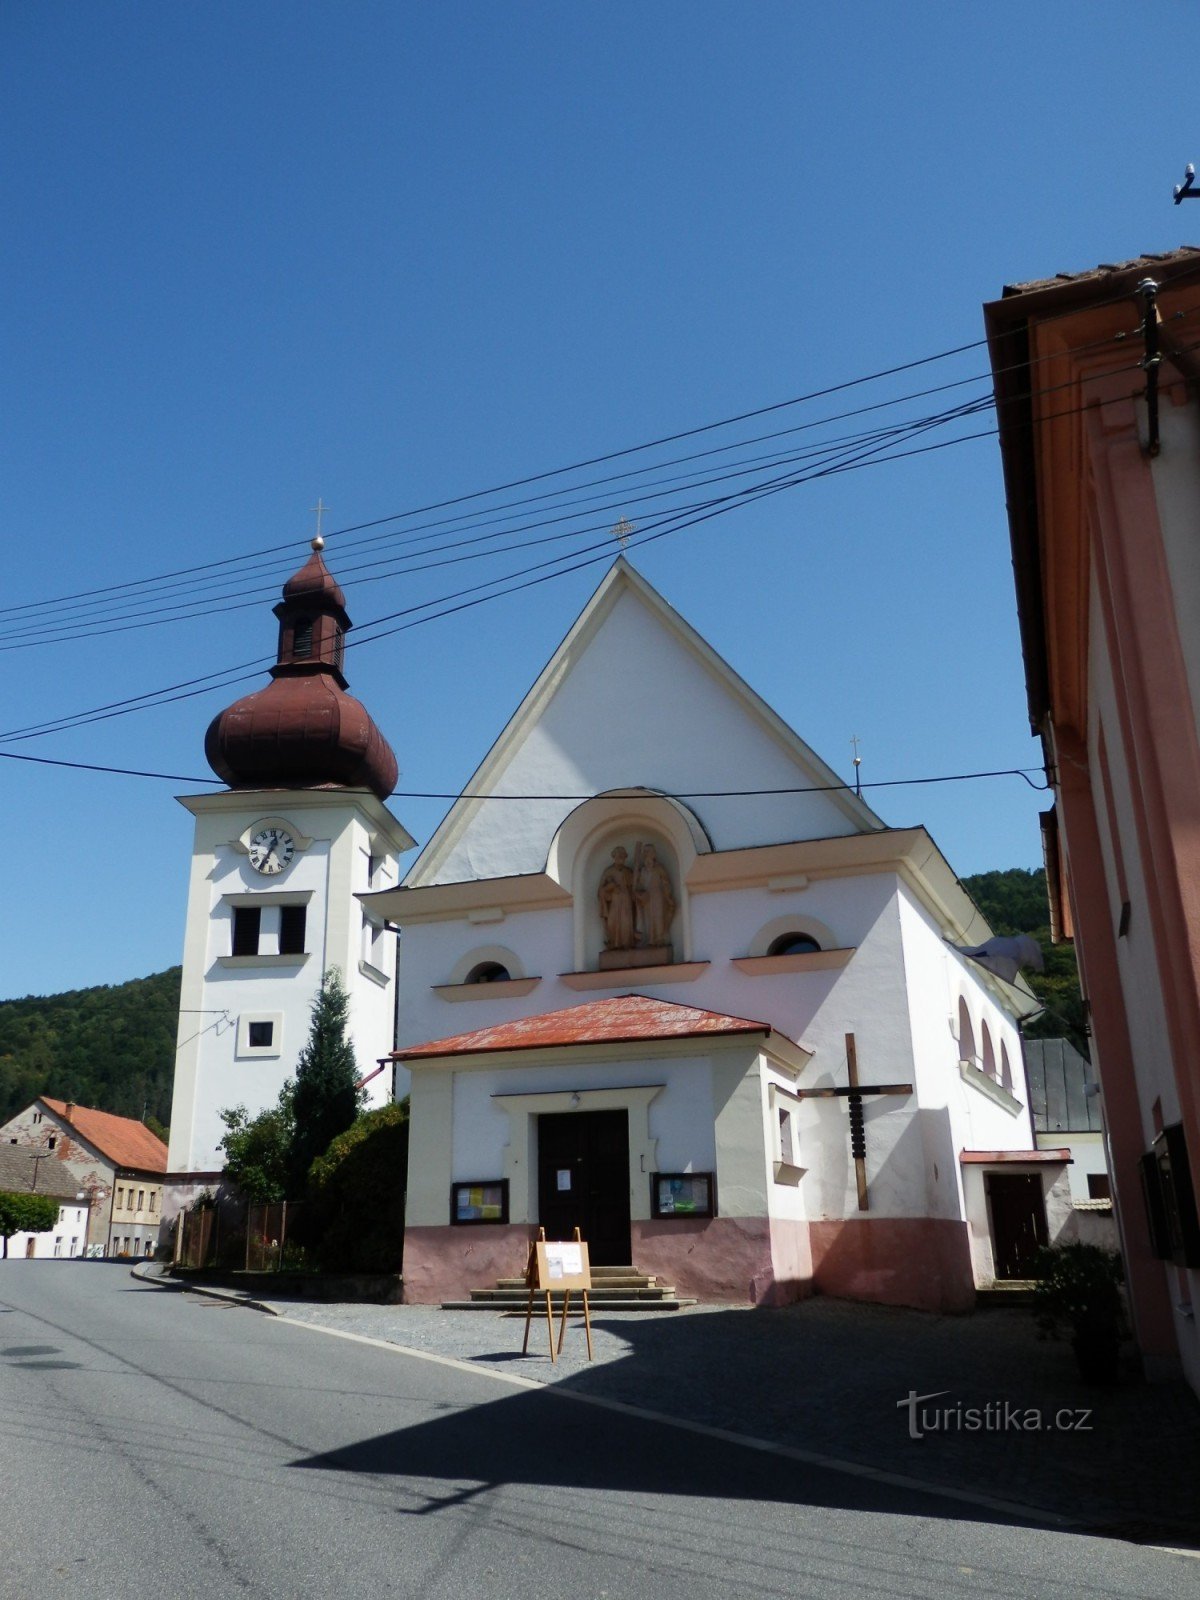 templom Szent Péter és Pál Štěpánov nad Svratkouban